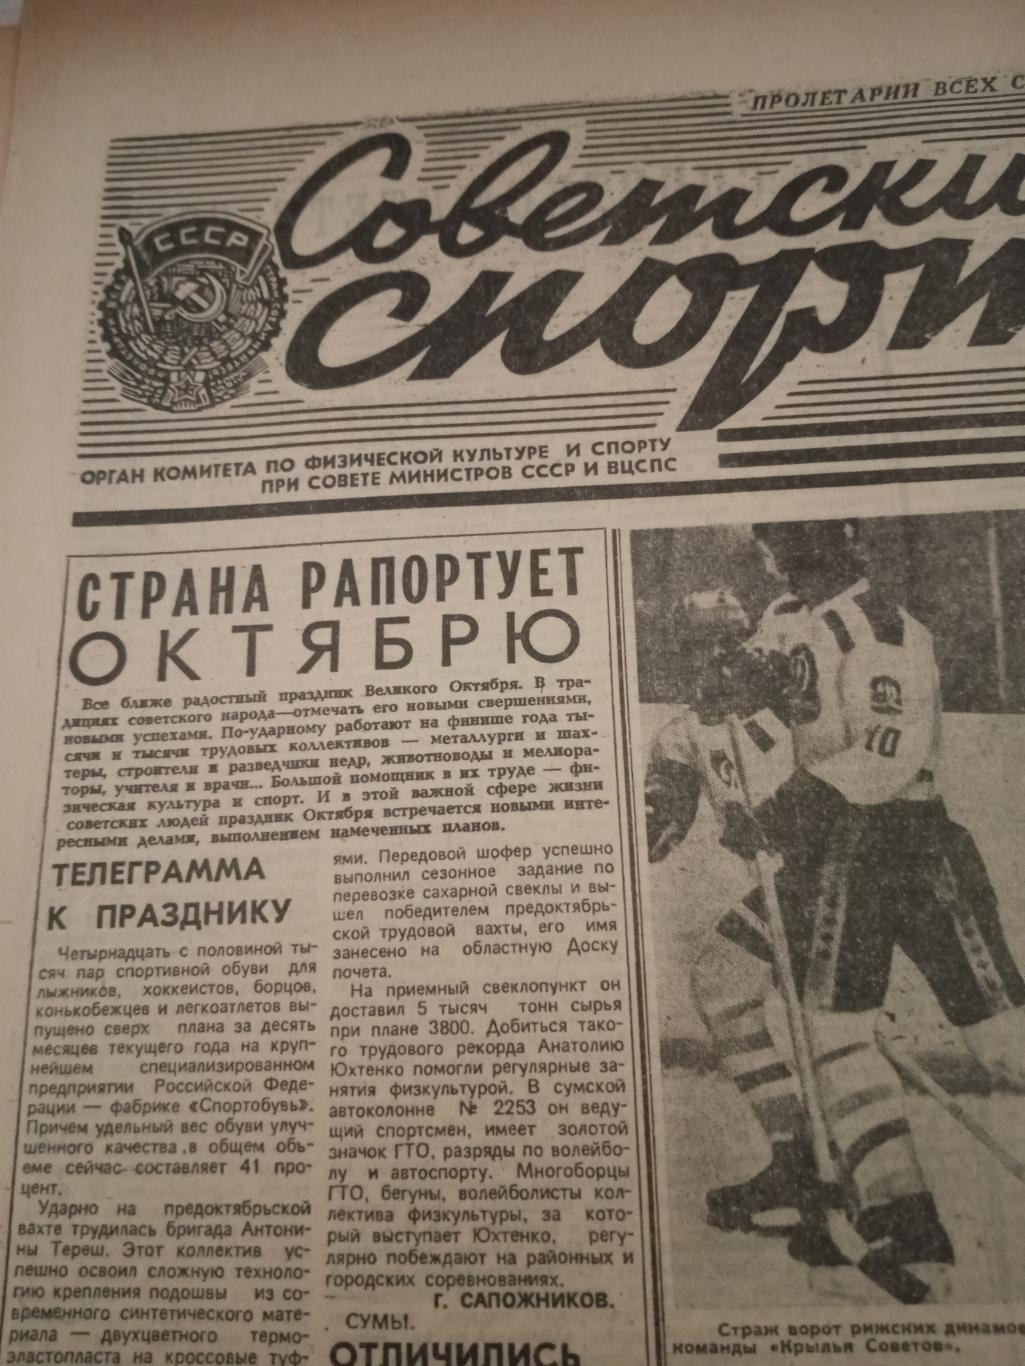 Советский спорт. 17 номеров! ё984 год, 1 - 22 ноября